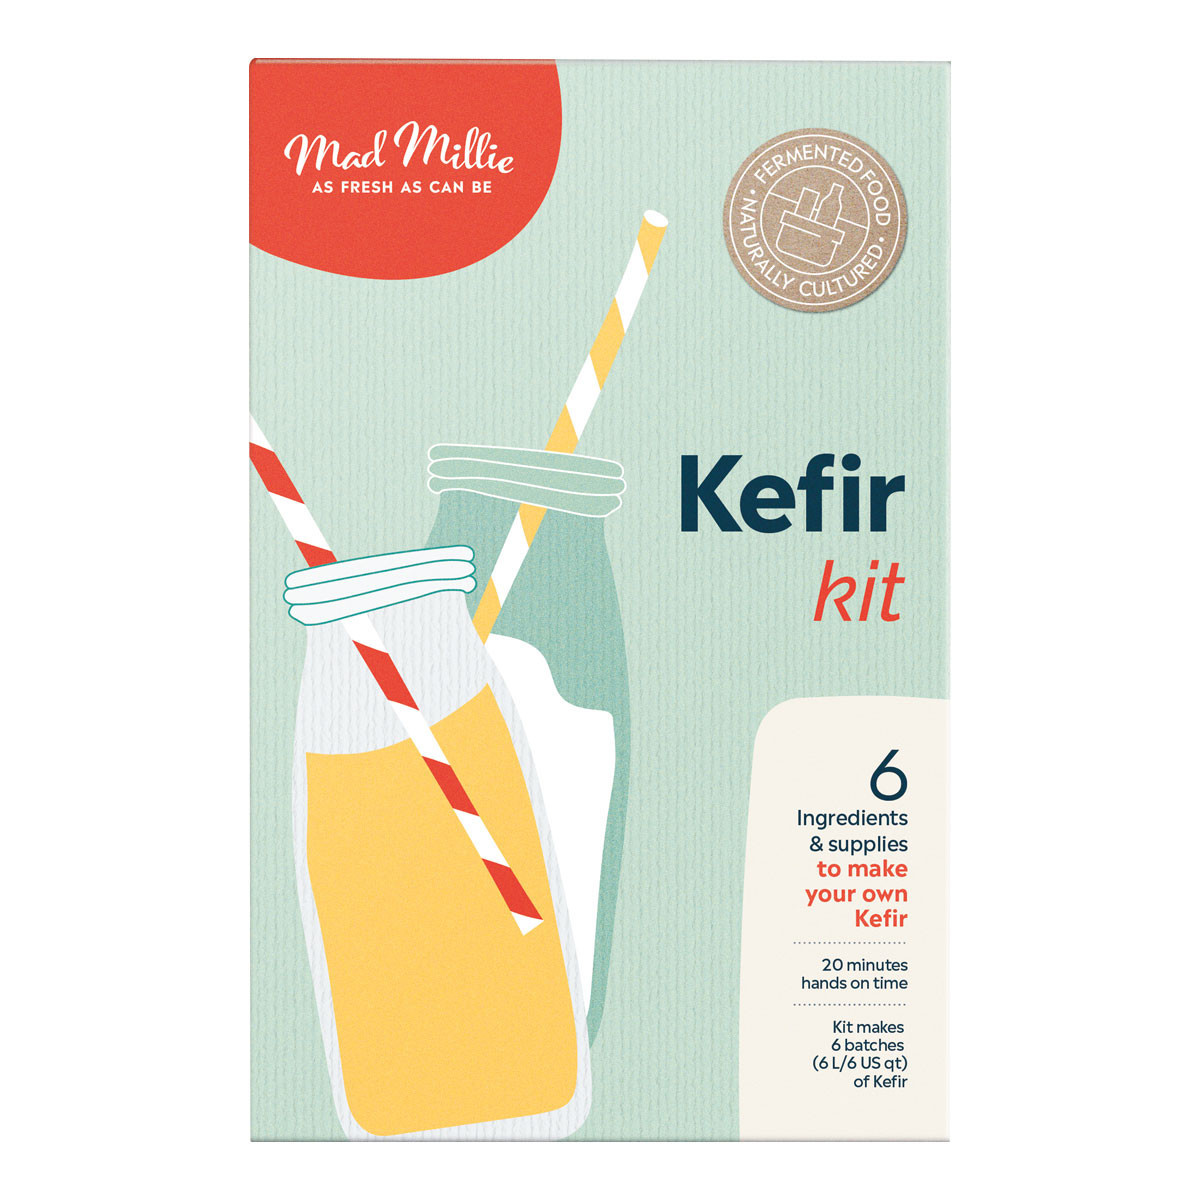 Kefir Kit - Mad Millie